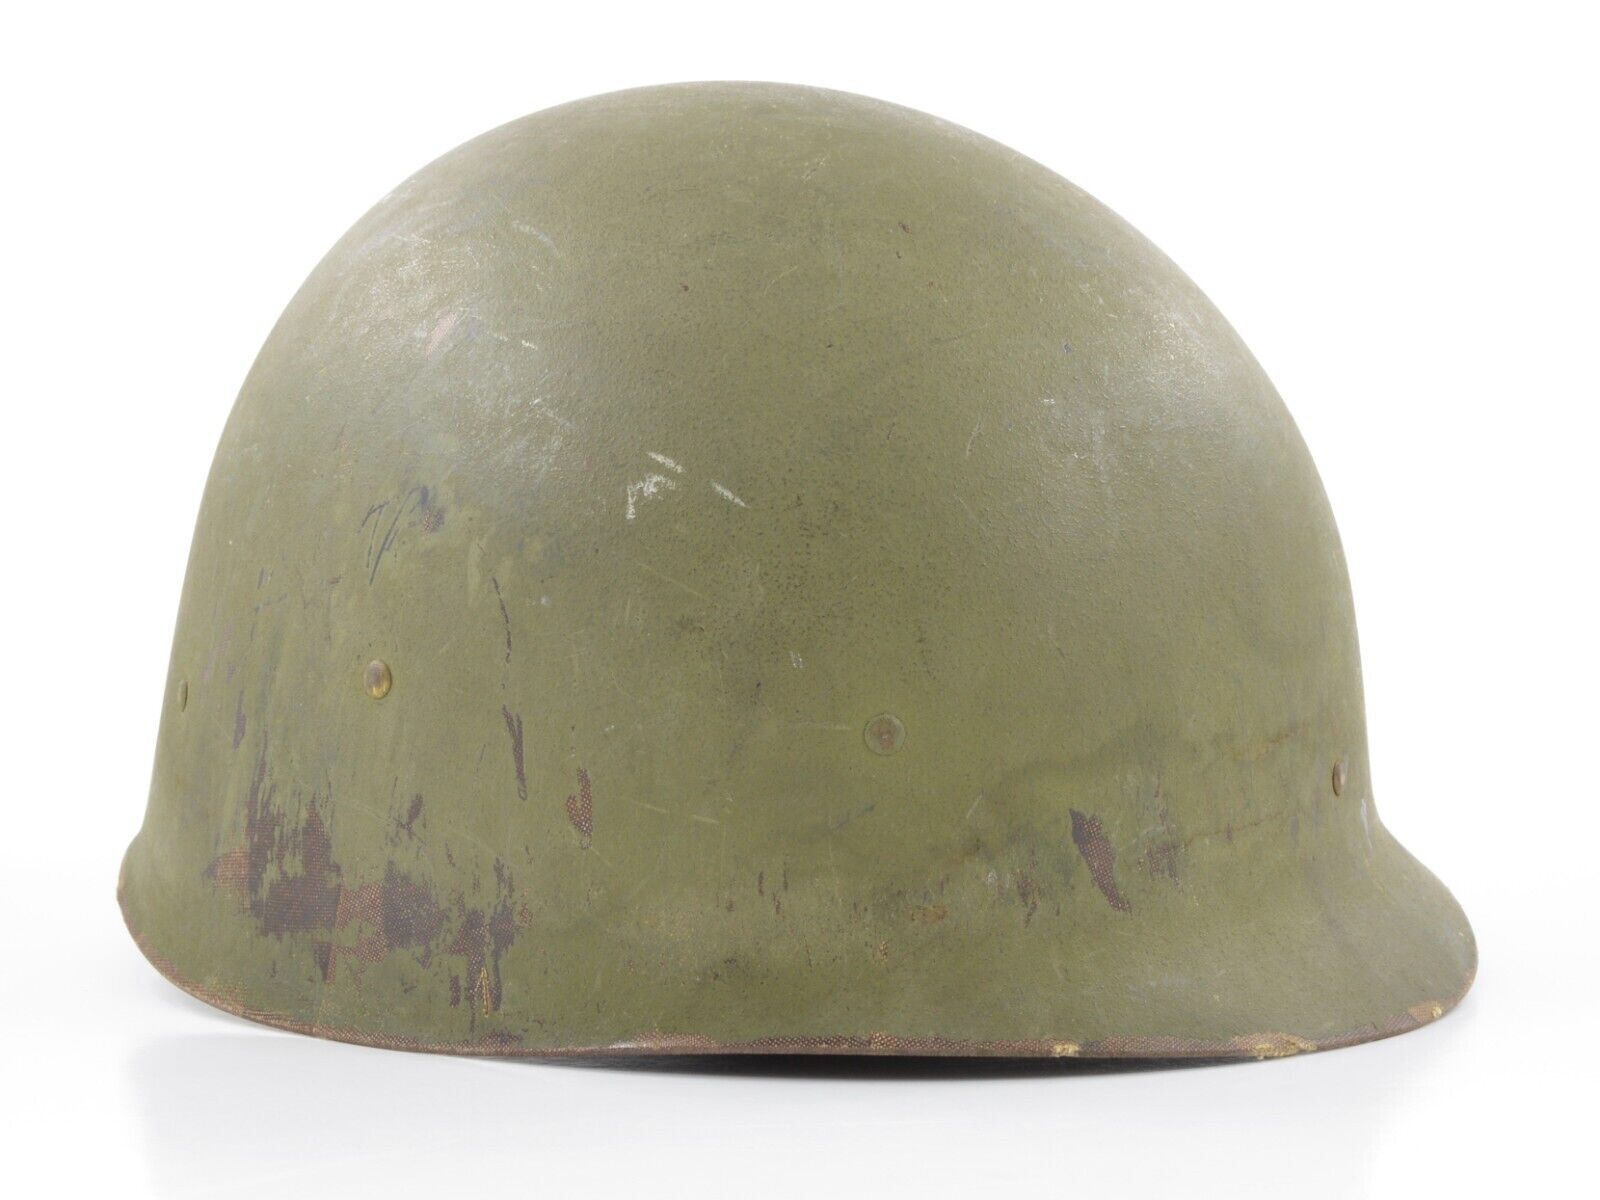 Original Early-Vietnam War Infantry M1 Helmet Liner Complete W/ Sweatband (1965)